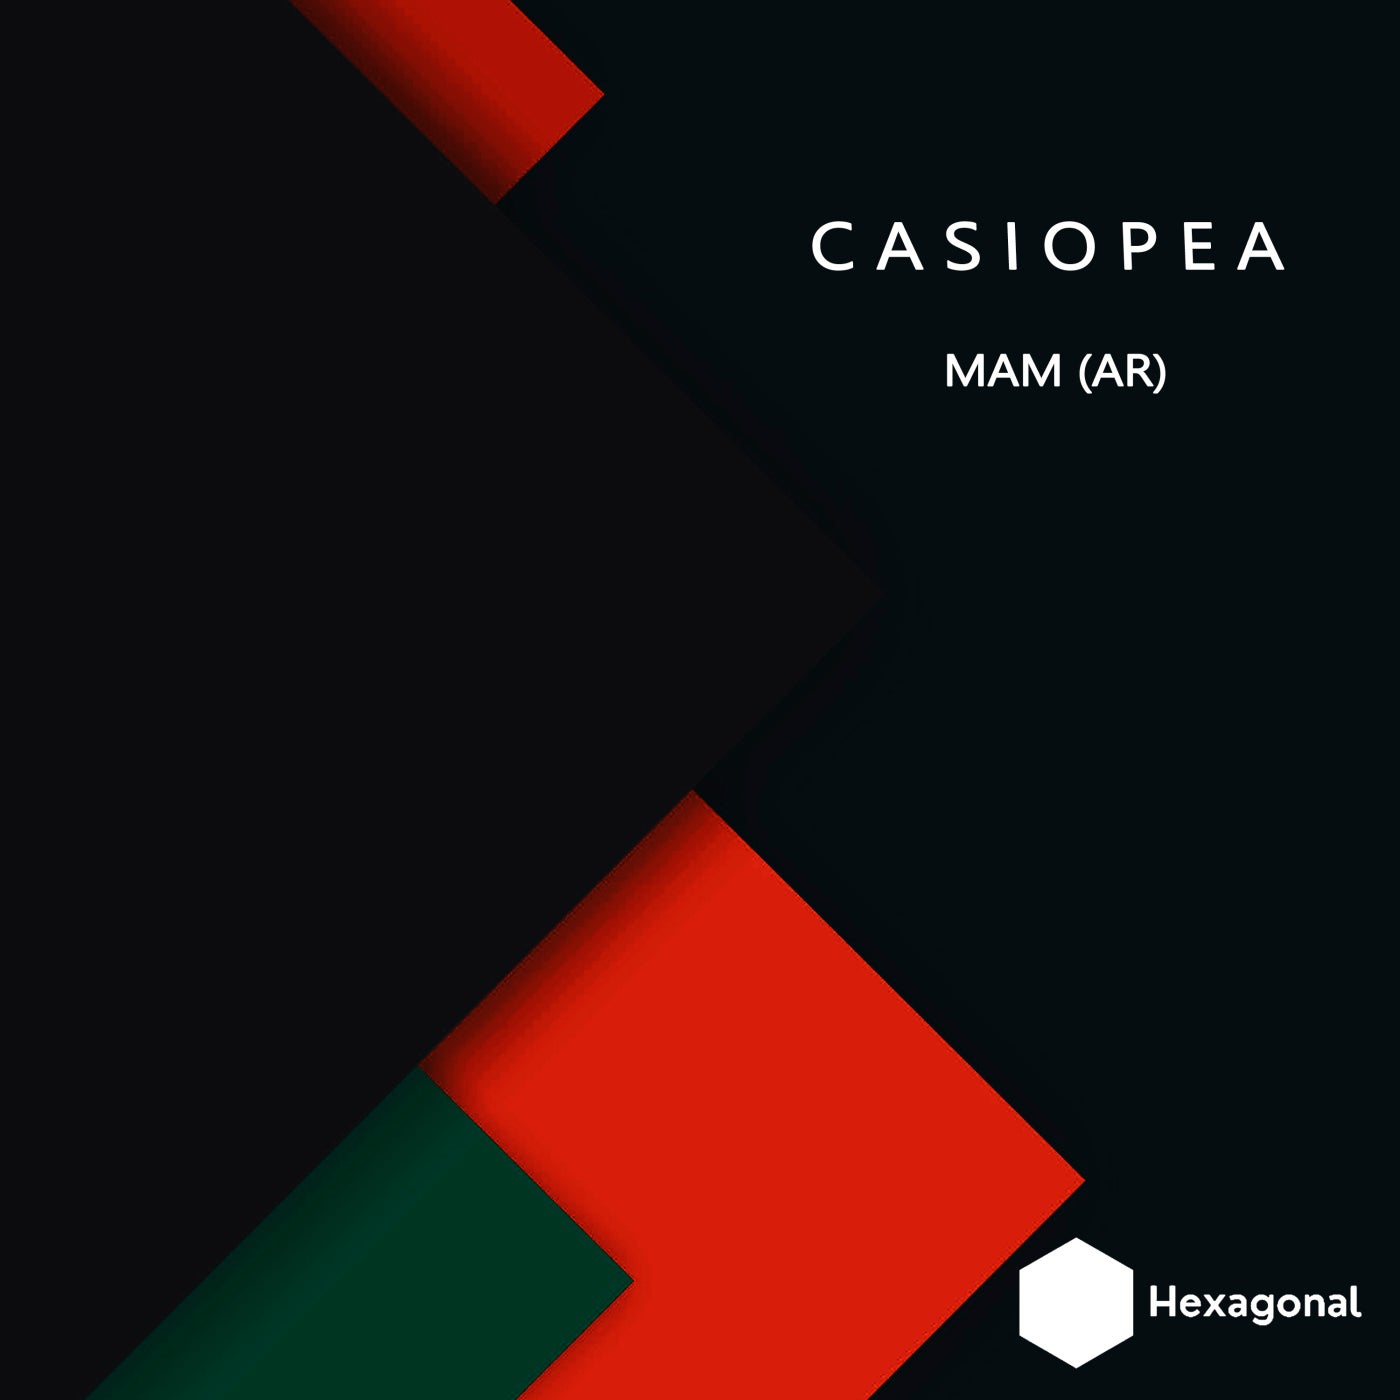 Hexagonal Music artists & music download - Beatport